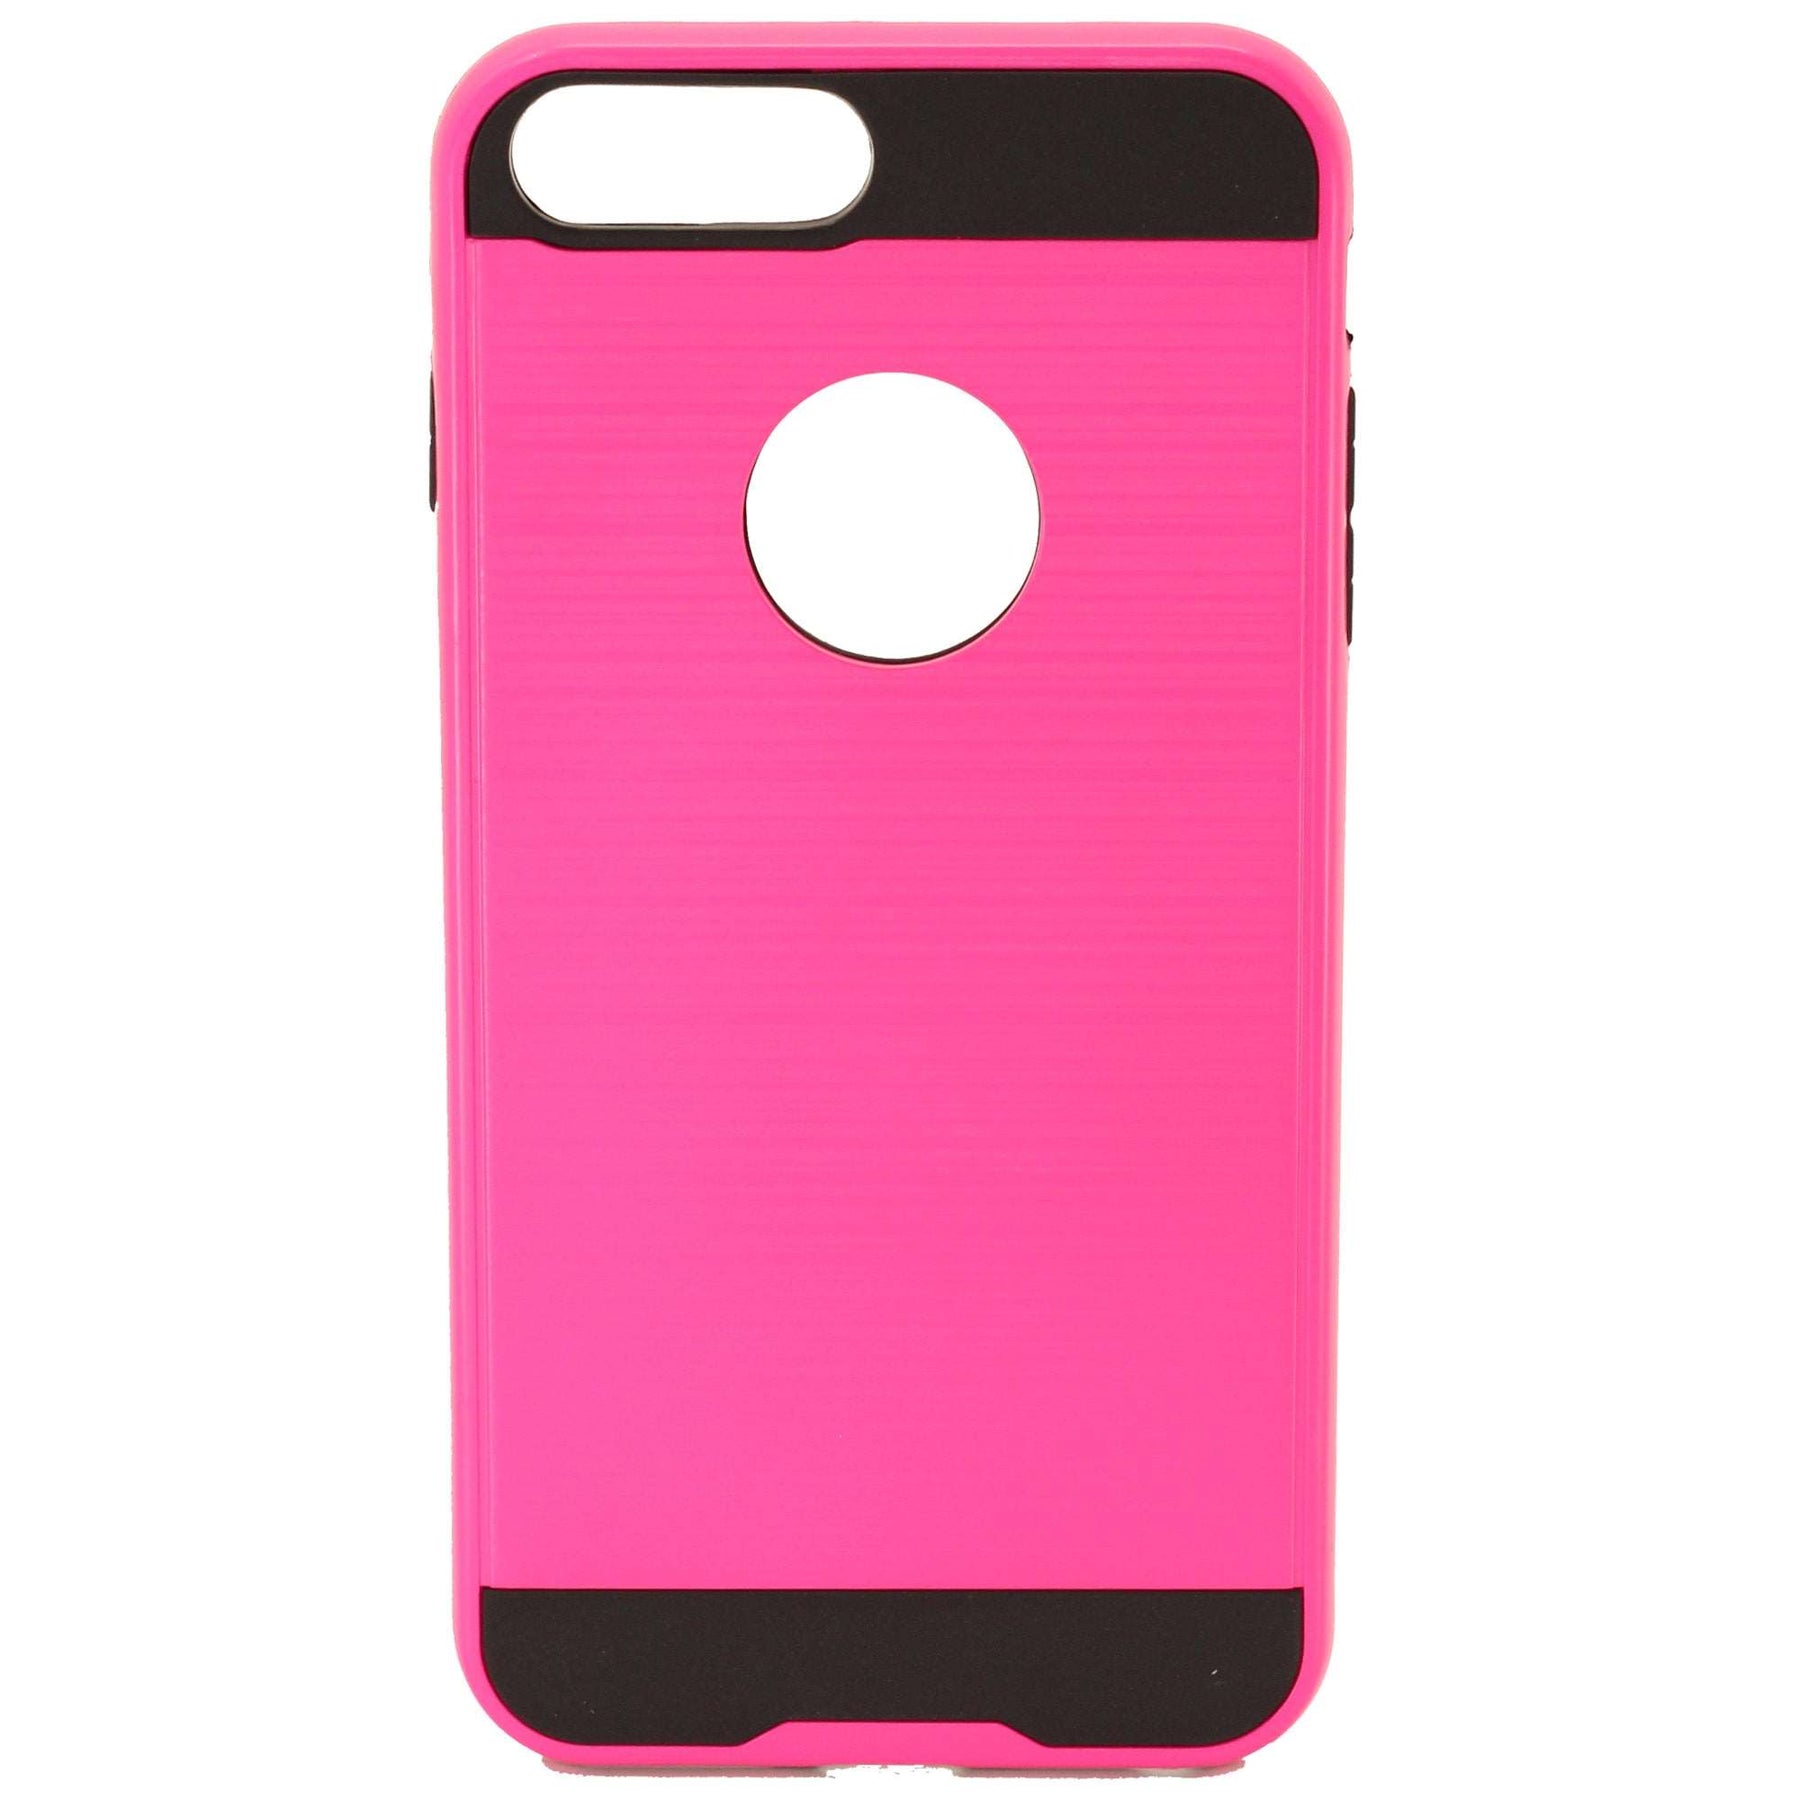 iPhone 7/8 Plus pink slim case